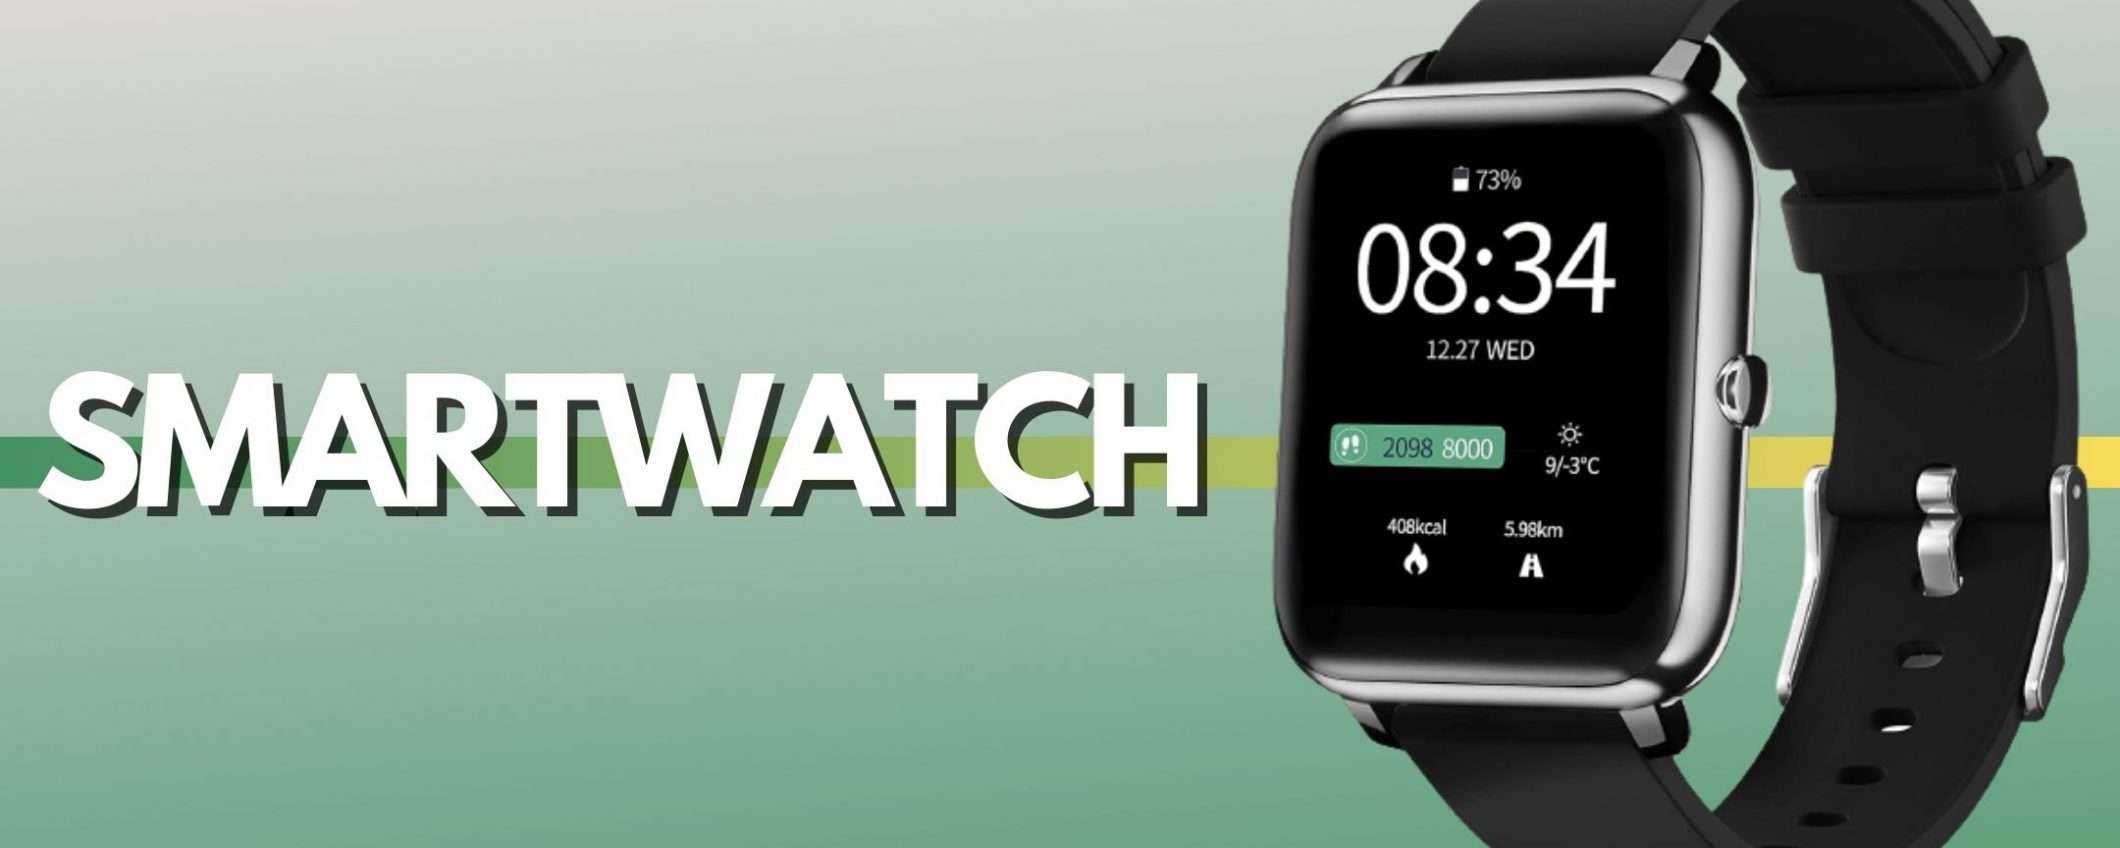 Smartwatch a 16€: un'offerta da prendere al volo (-15%)